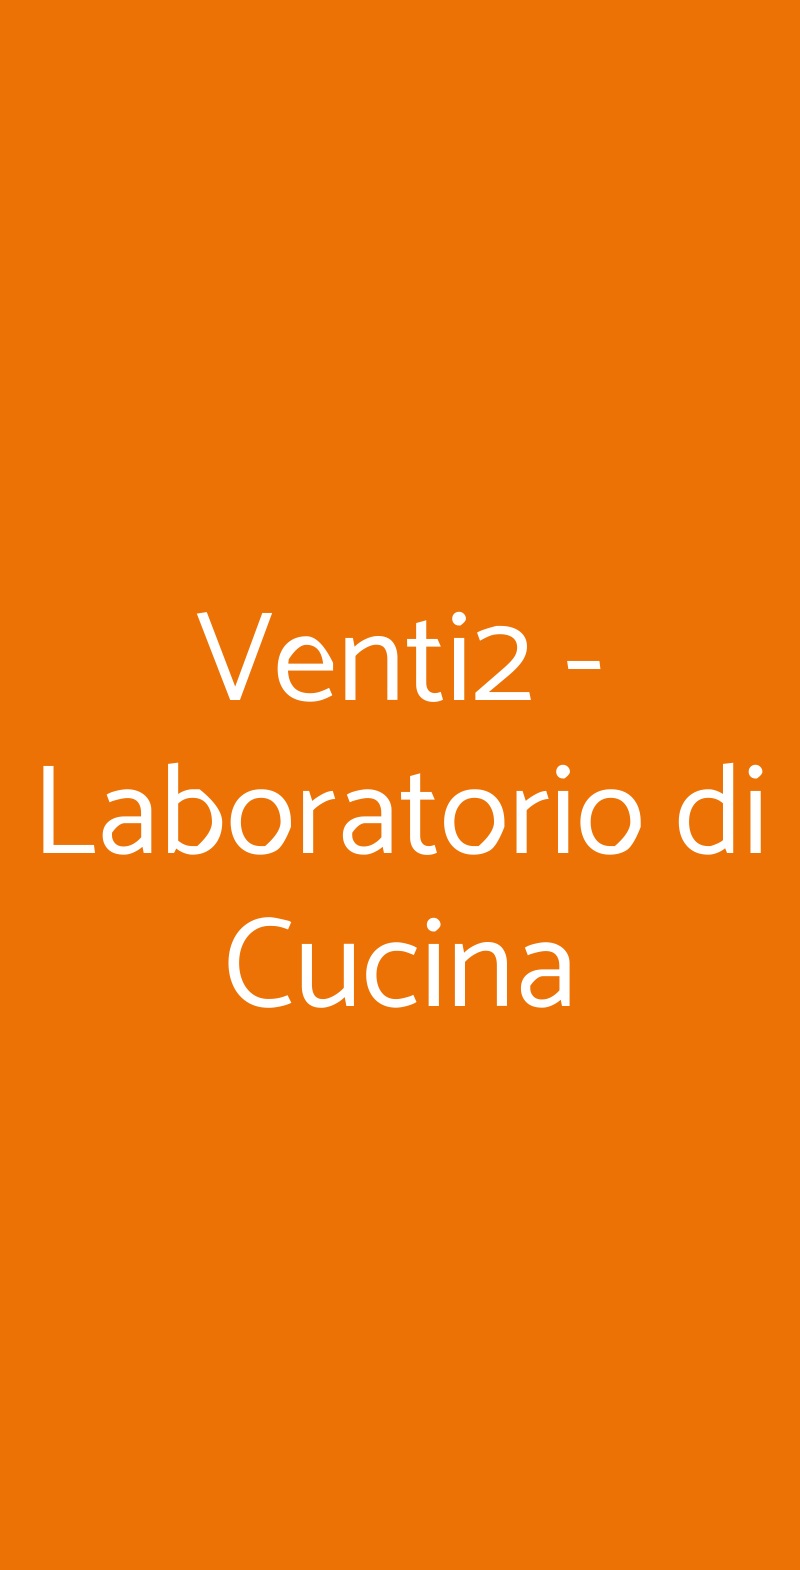 Venti2 - Laboratorio di Cucina Cassino menù 1 pagina